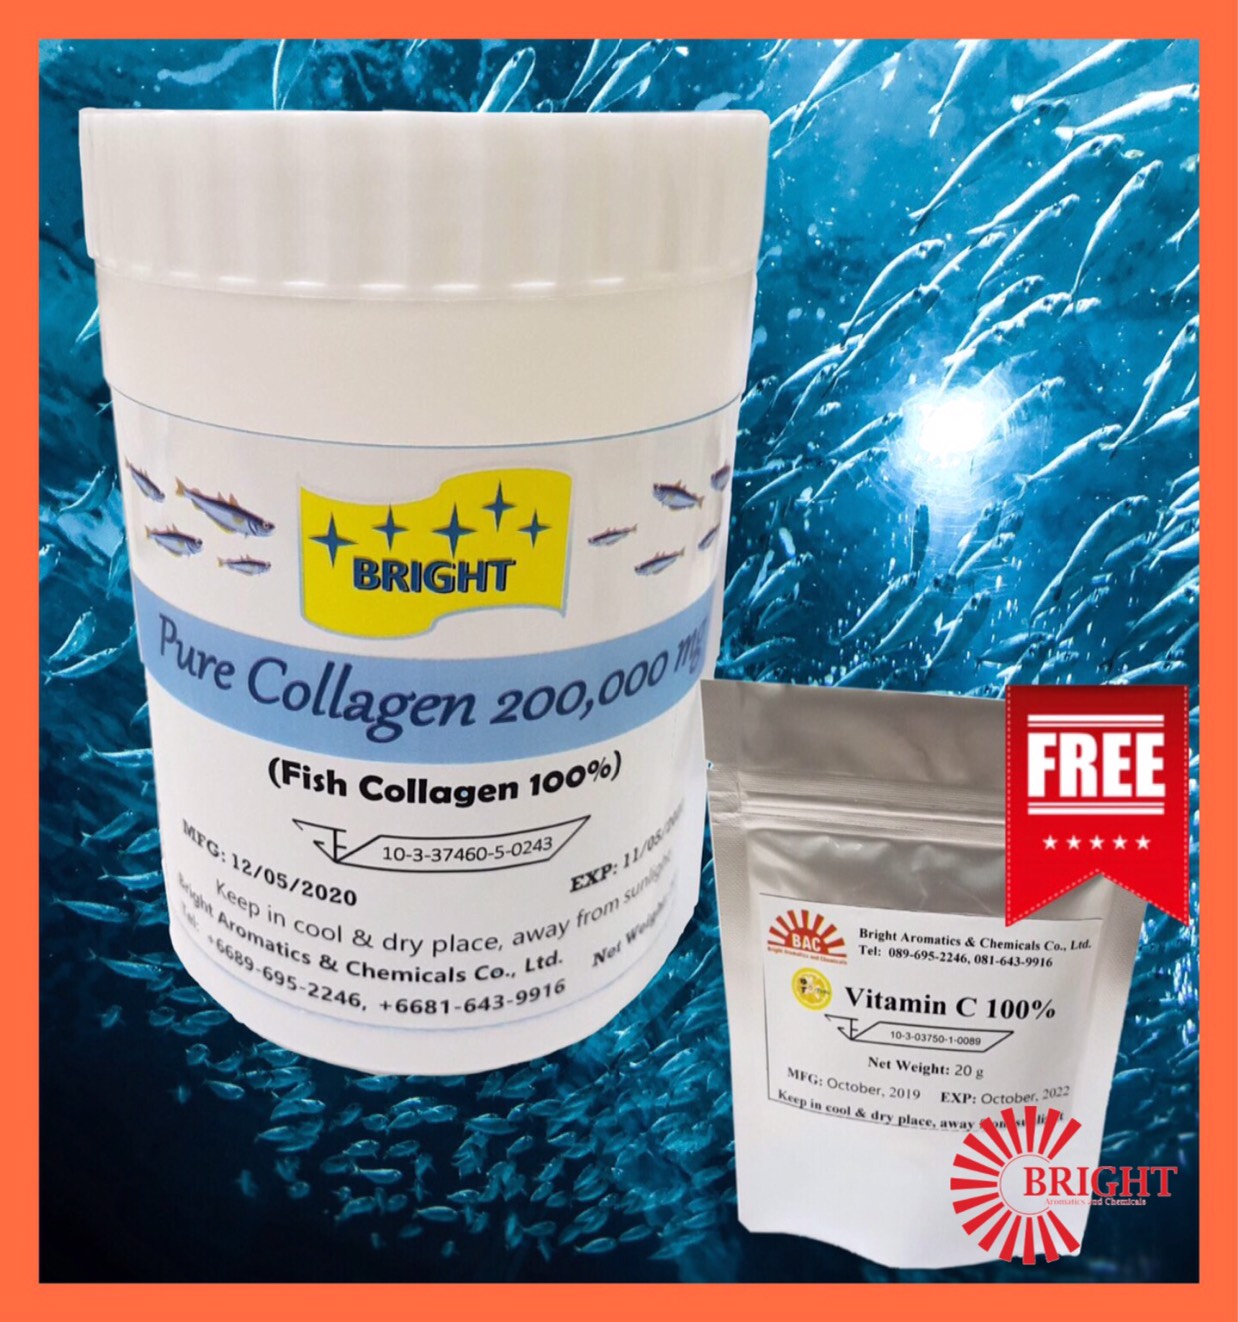 Collagen Peptide 100% ชนิดผง  คอลลาเจน 100% ช่วยเสริมสร้างกระดูกให้แข็งแรง ผิวอ่อนเยาว์  ขนาดบรรจุ 200 กรัม แถมวิตตามินซี 100% ชนิดผง ขนาดบรรจุ 20 กรัม ดูแลผิวสวย ร่างกายแข็งแรง